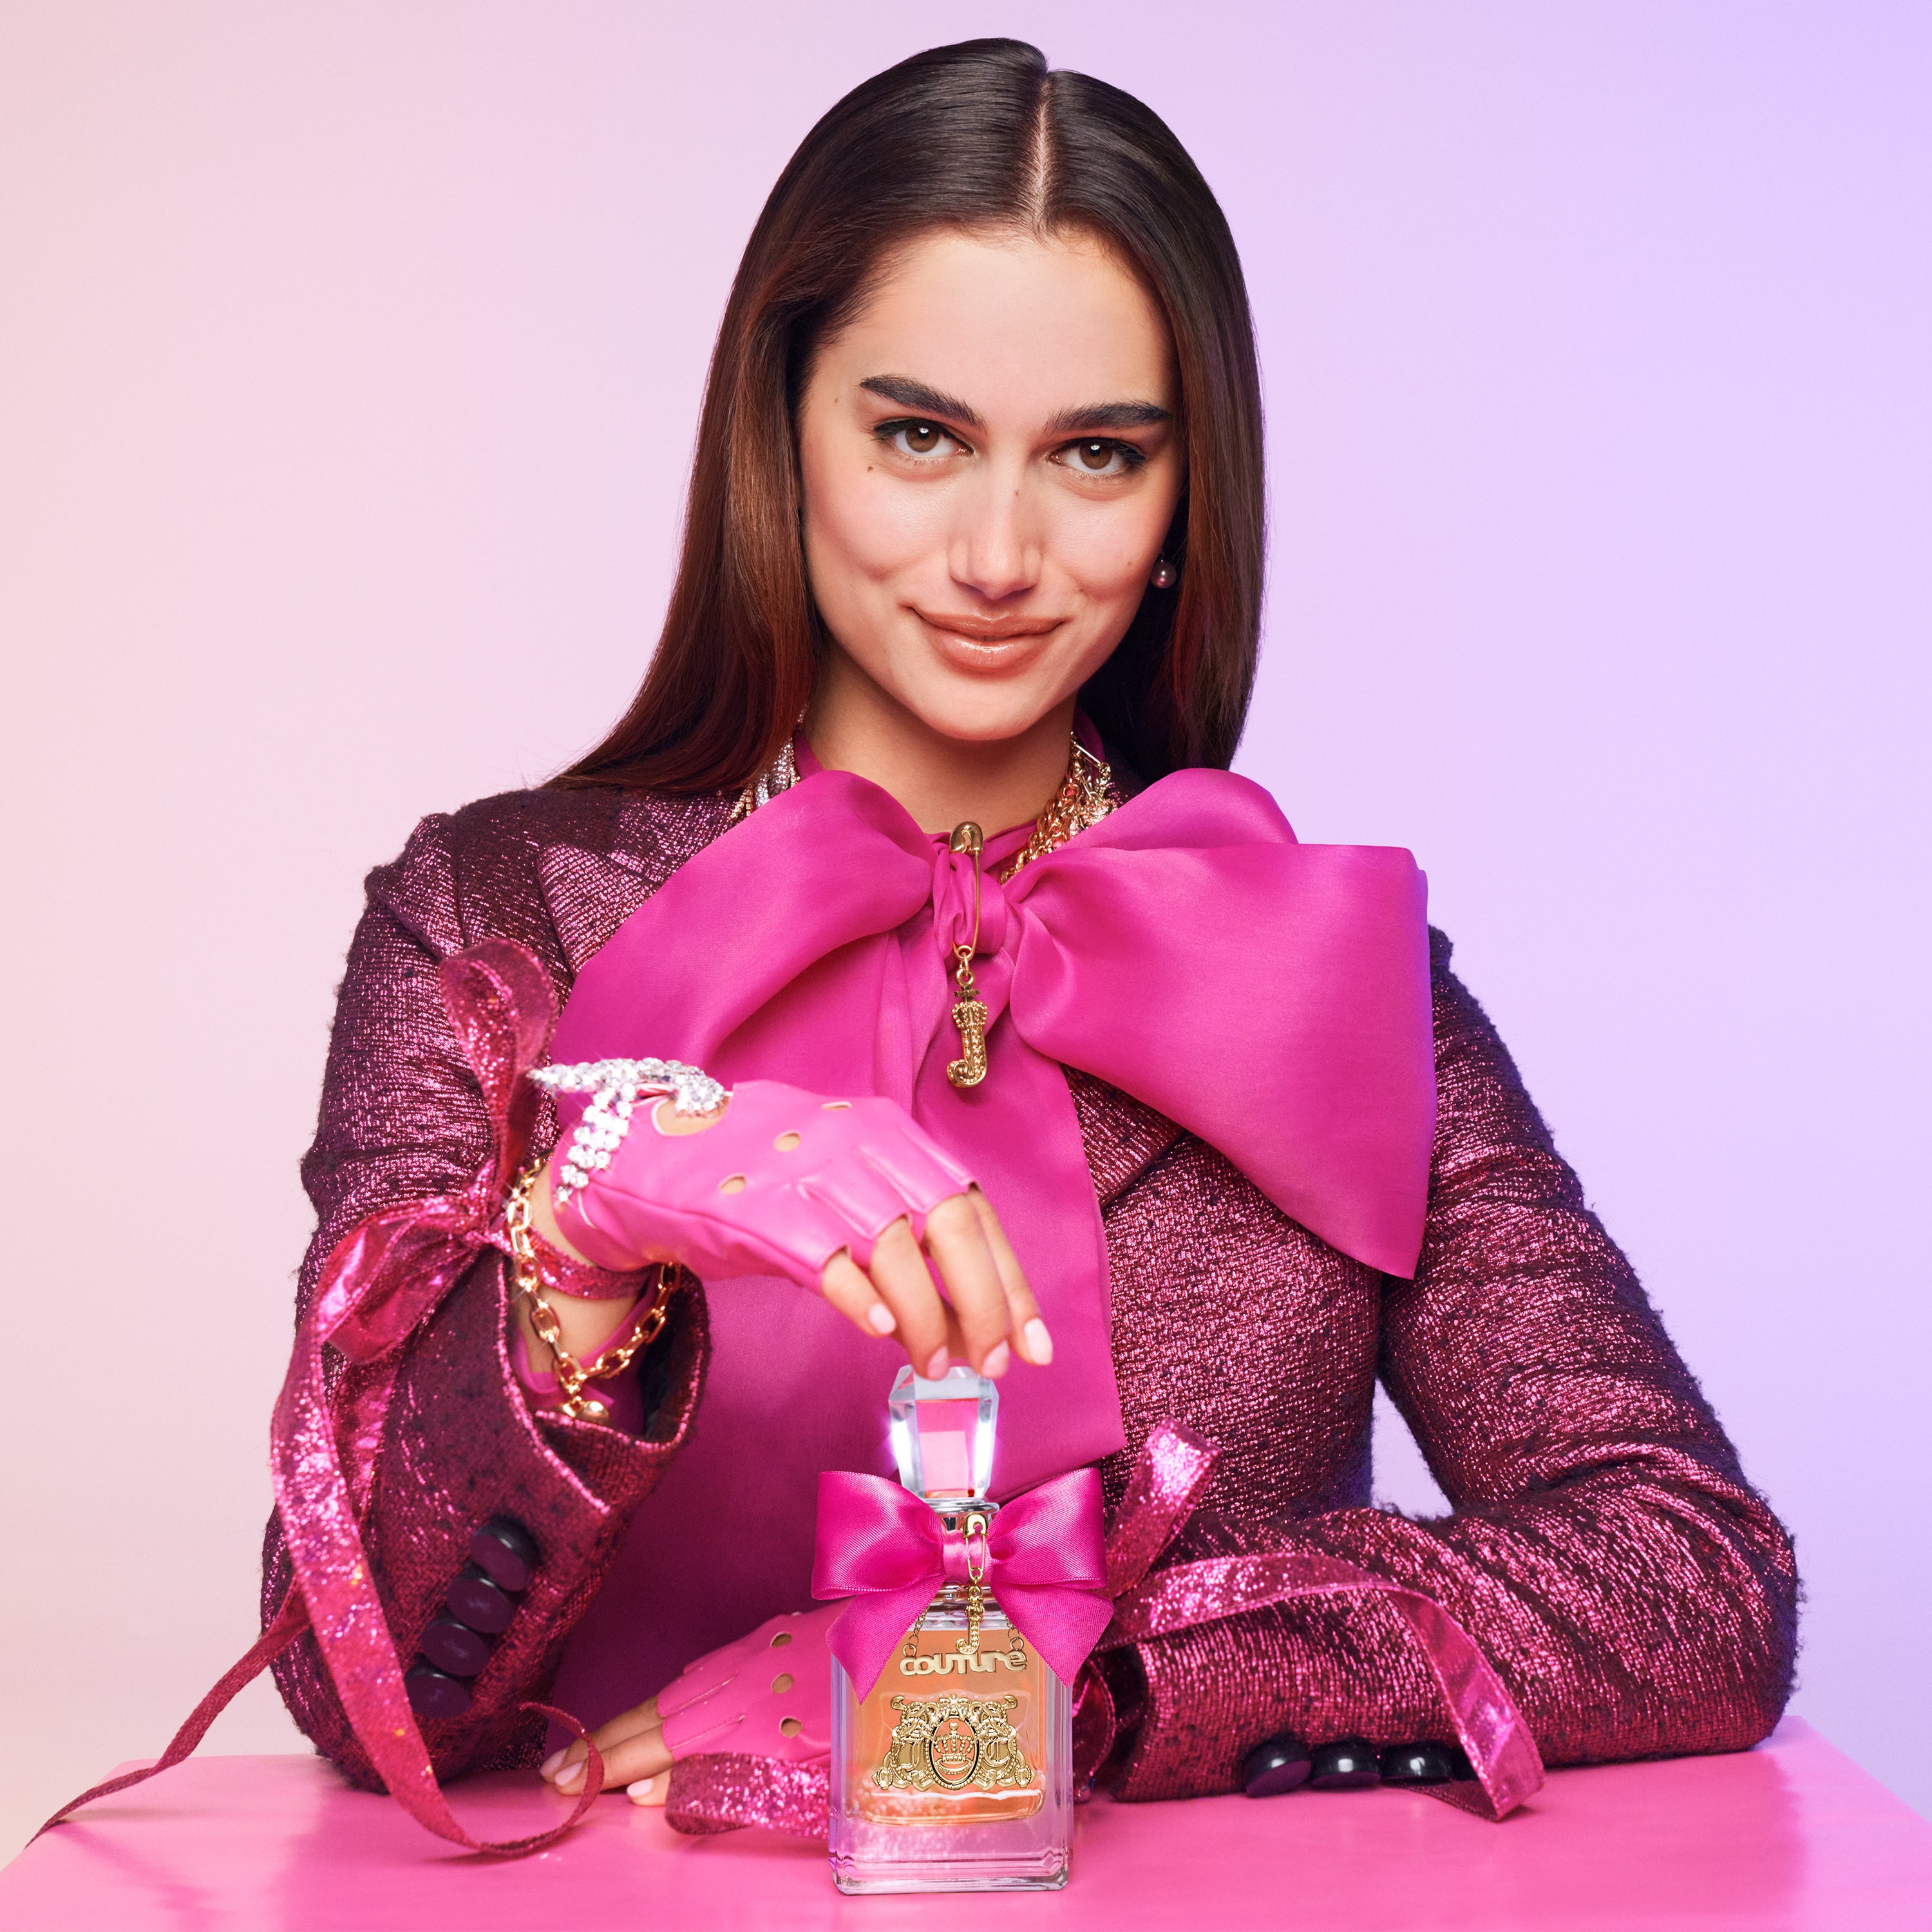 Viva La Juicy Eau de Parfum Gift Set - Juicy Couture